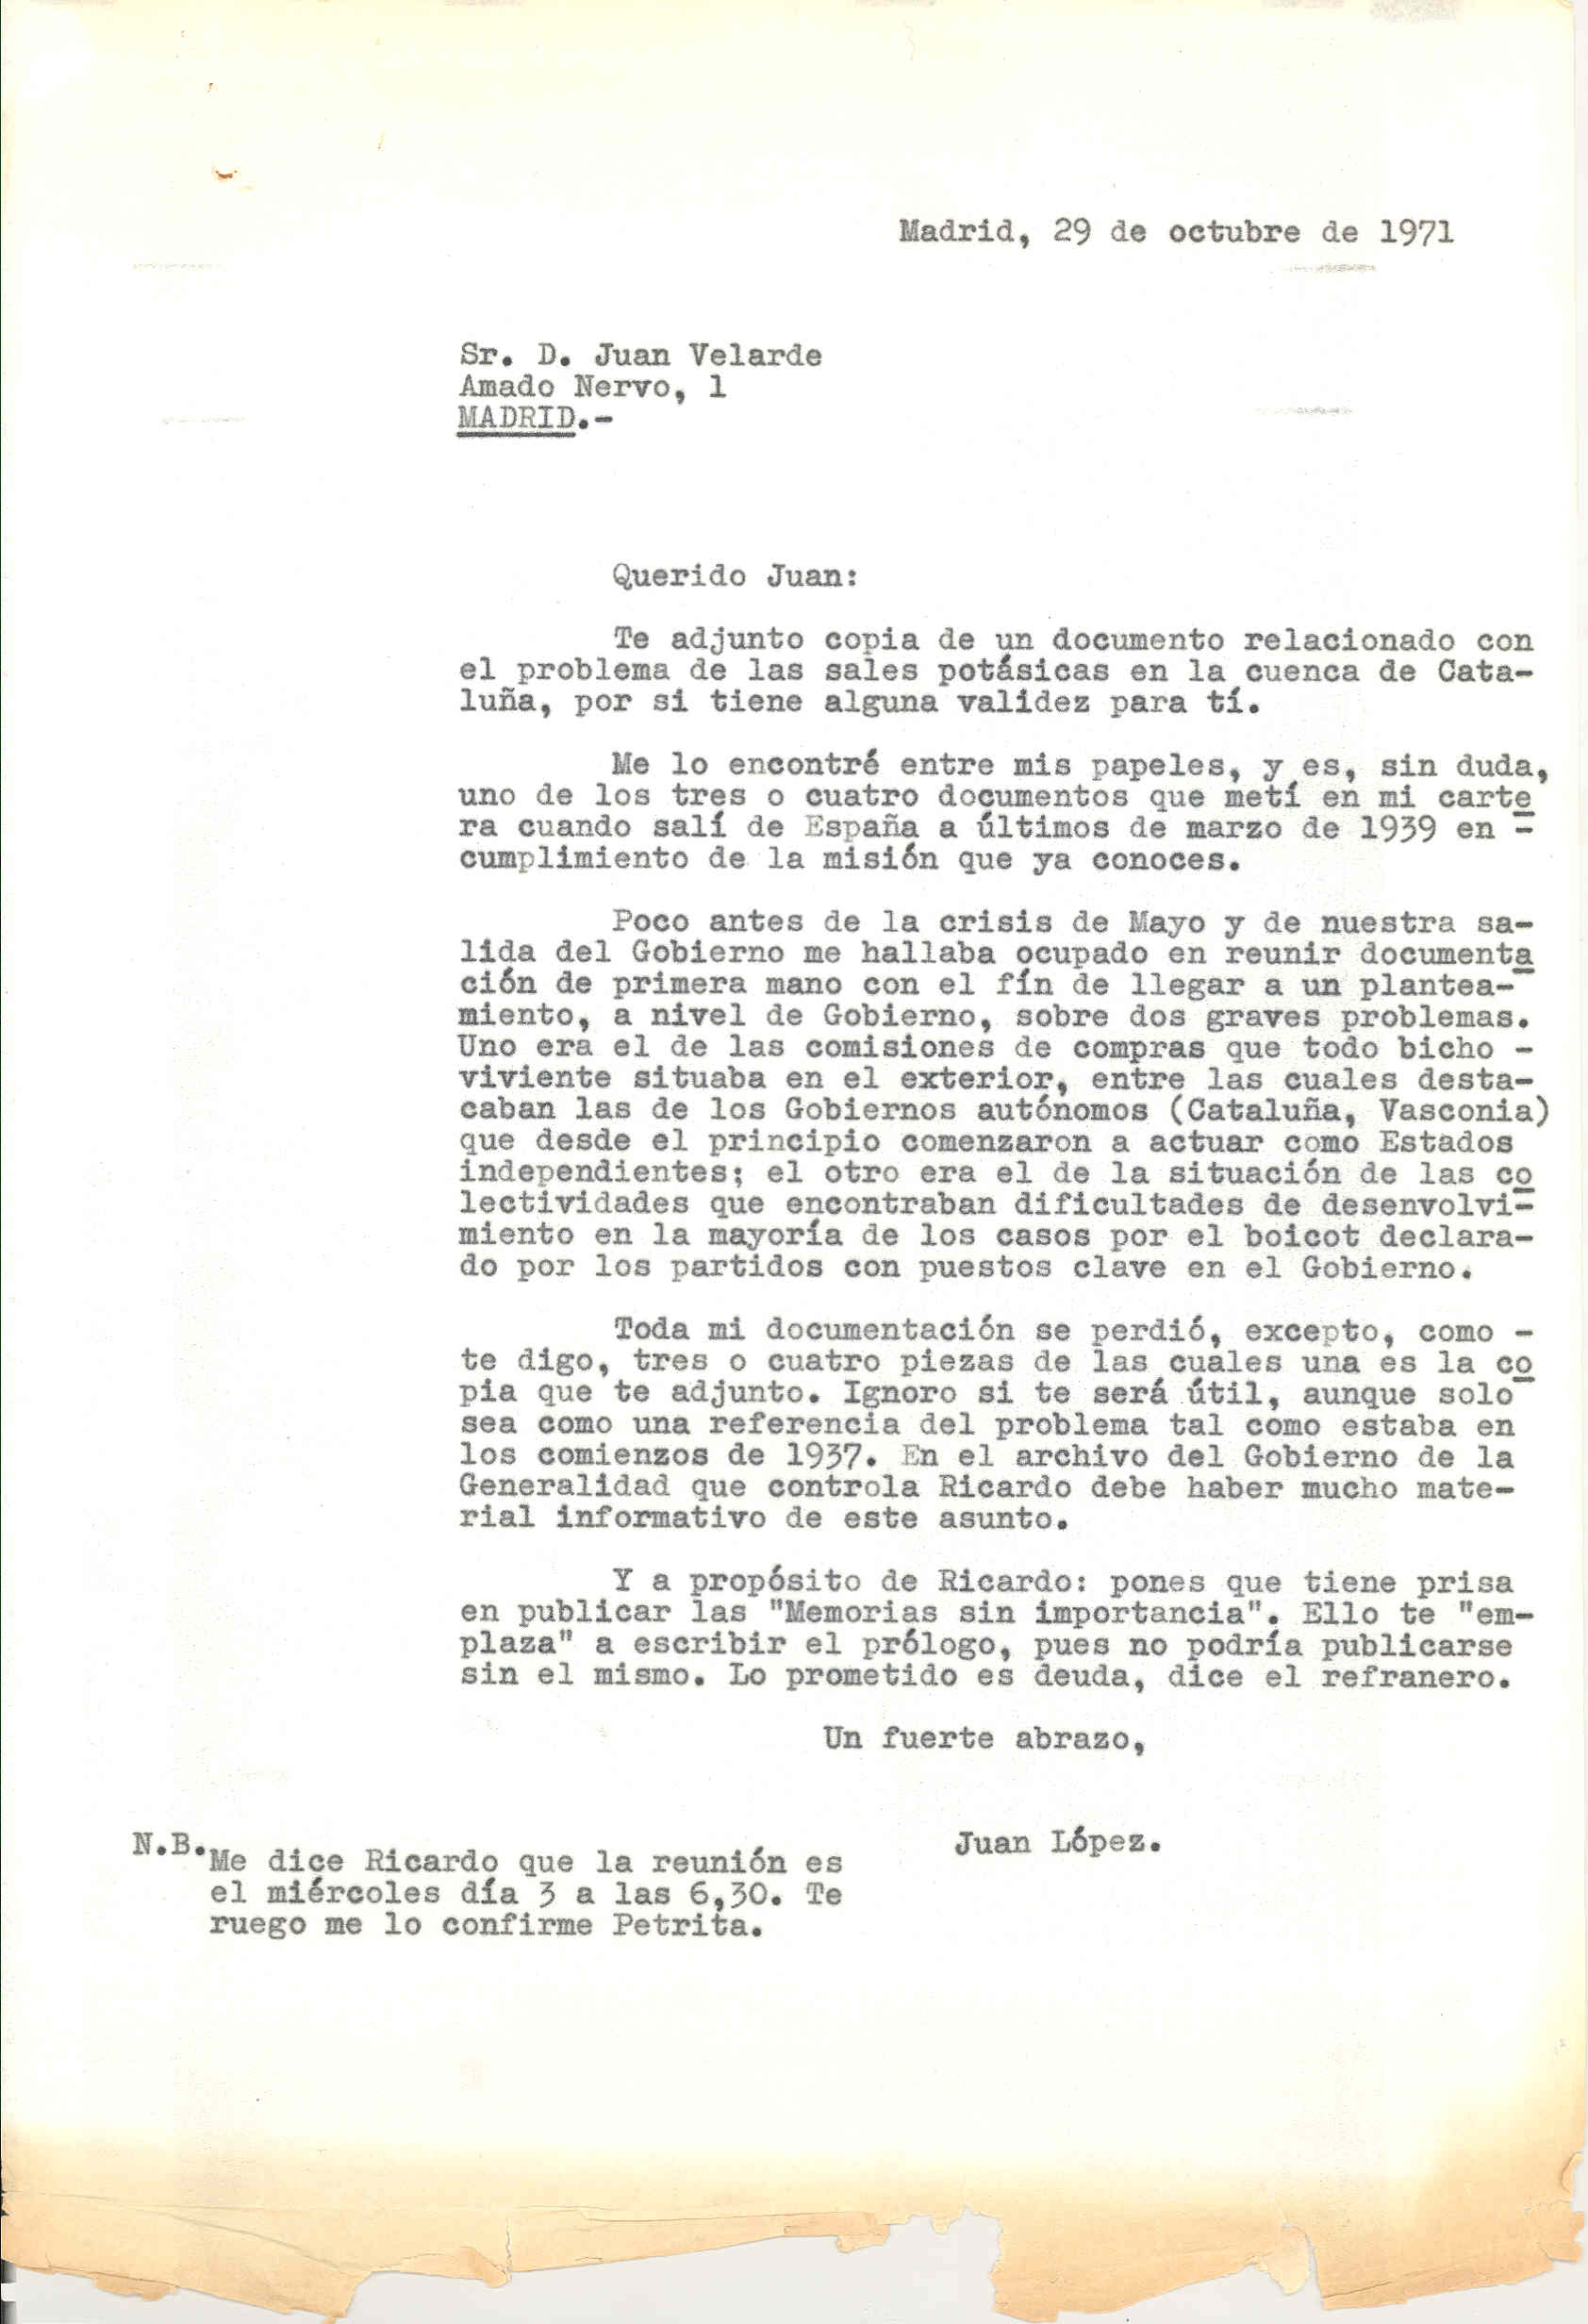 Carta a Juan Velarde con la que adjuntó copia de uno de los pocos documentos de su etapa en el gobierno de la República que pudo salvar al exiliarse y le comenta algunas de sus actividades en 1937